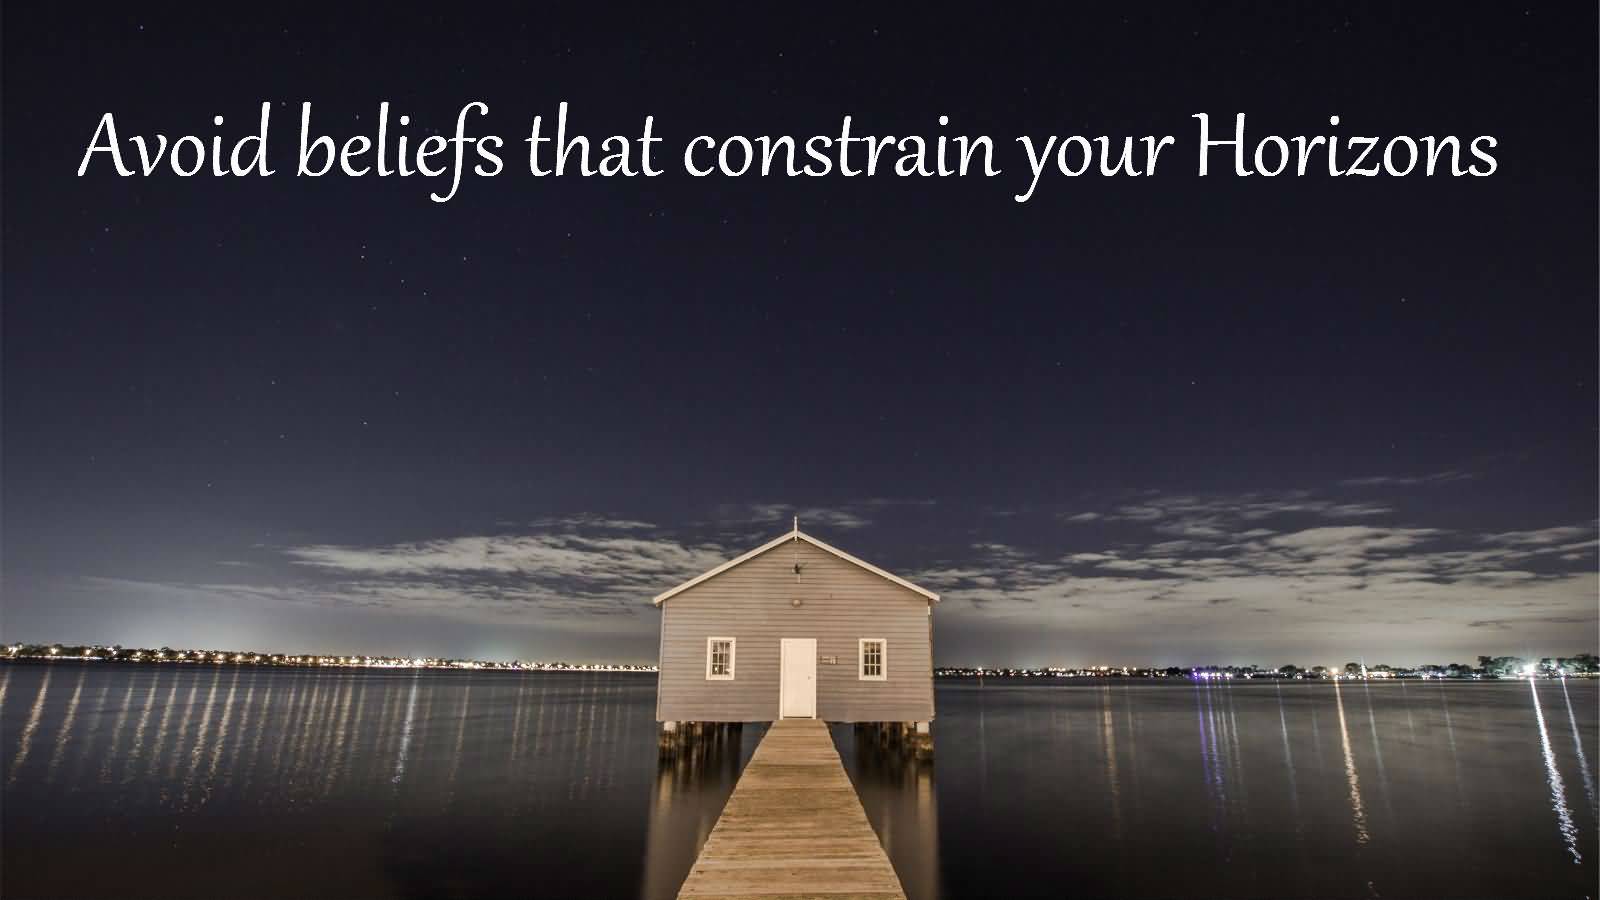 Avoid beliefs that constrain your Horizon.